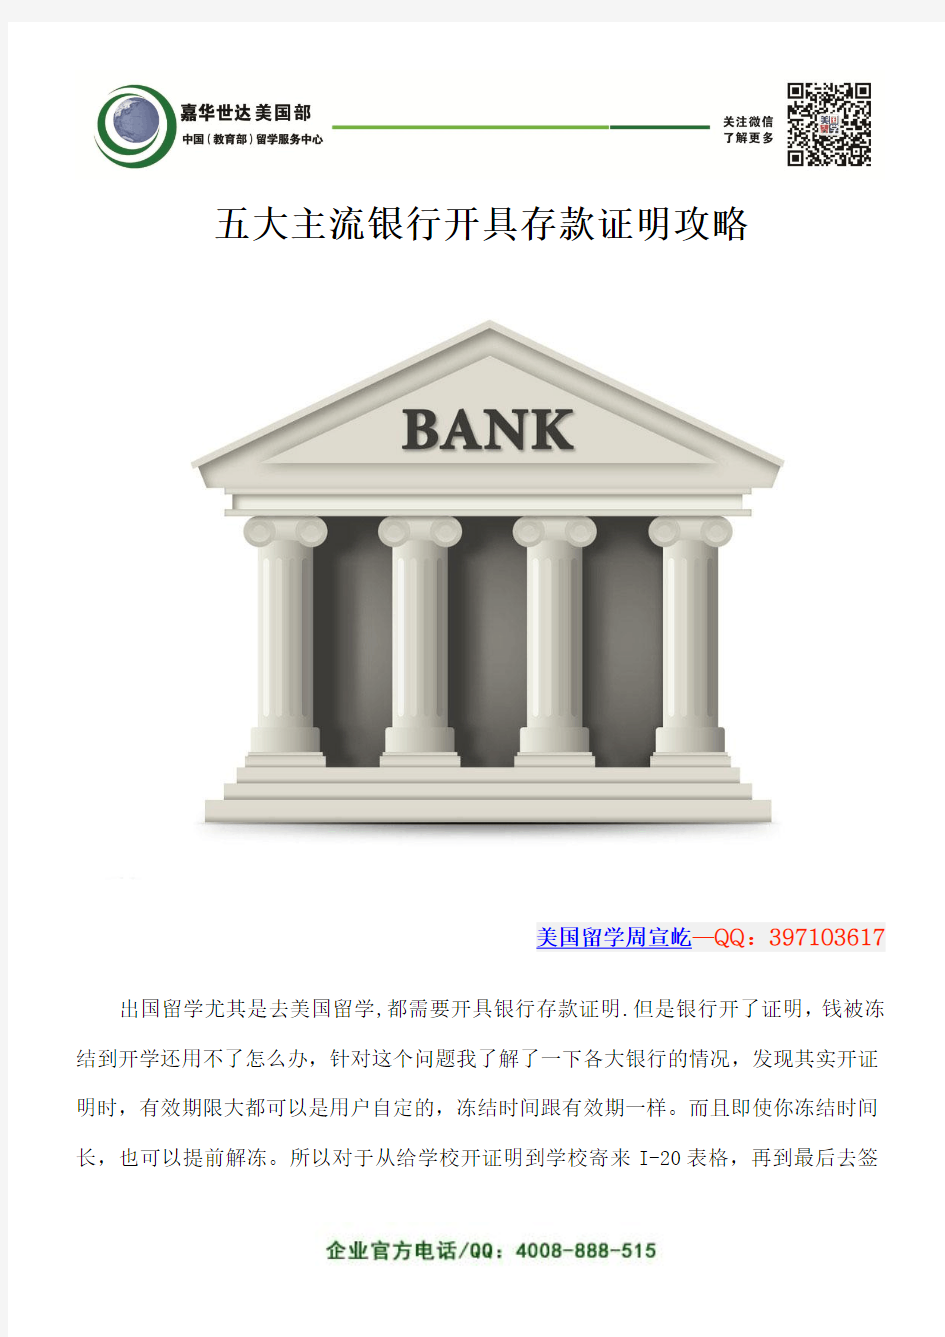 五大主流银行开具存款证明攻略